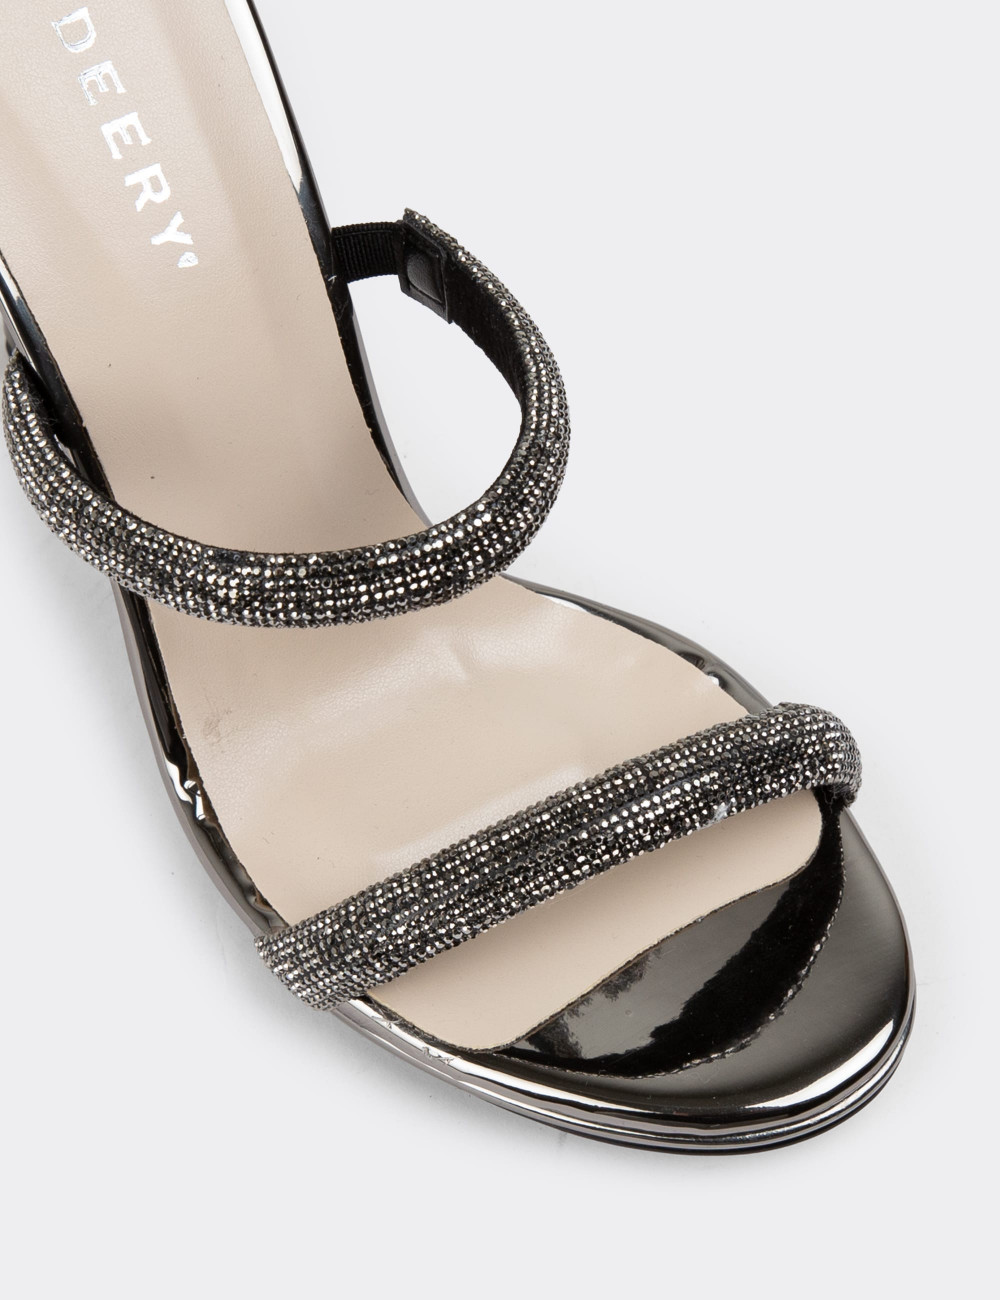 Platin Rengi Topuklu Kadın Taşlı Abiye Ayakkabı - H1748ZPLTM01